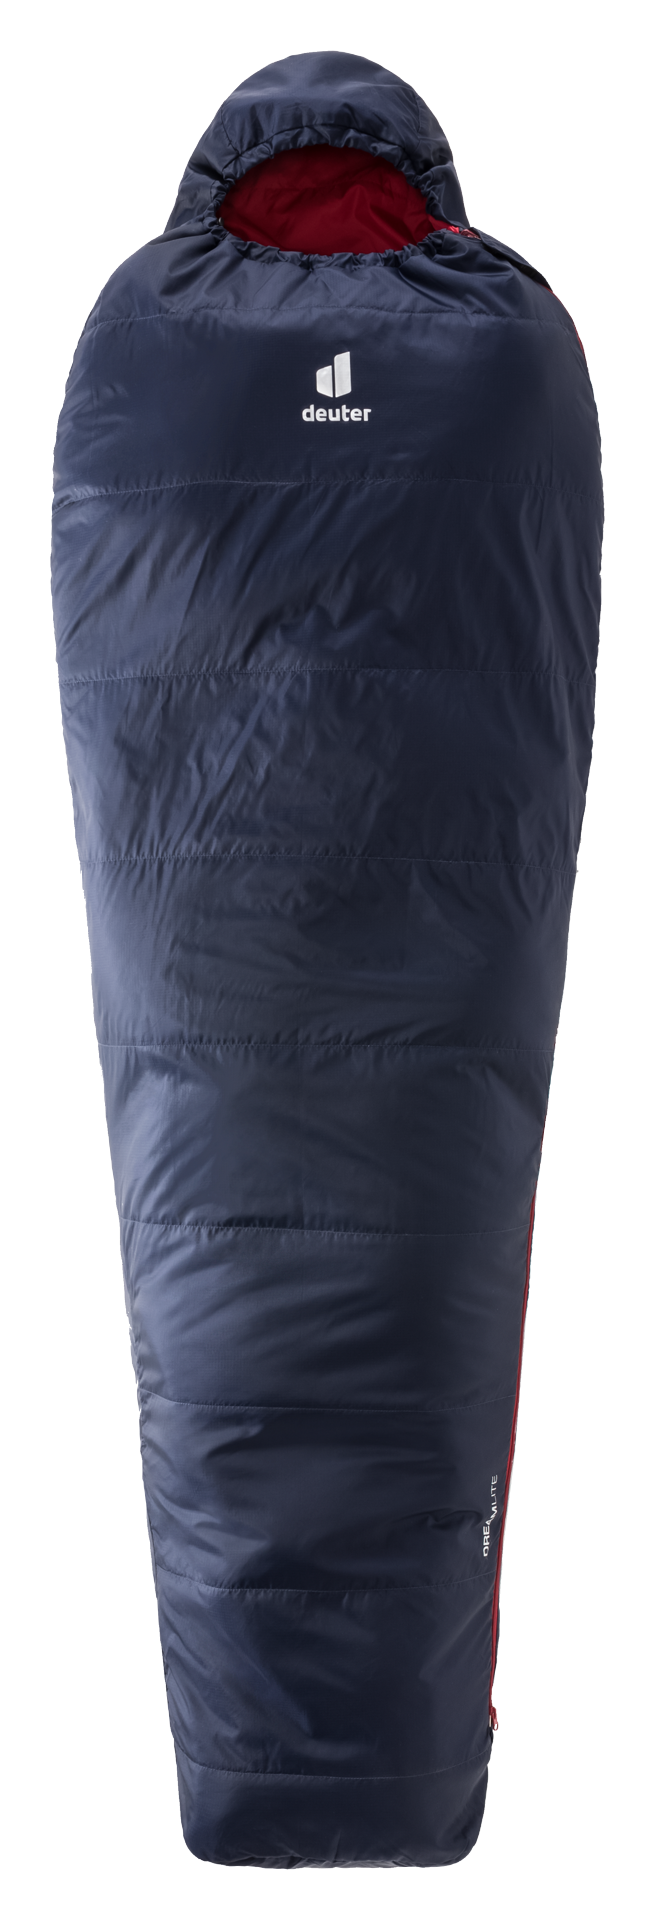 Спальный мешок deuter DreamLite 13° limit, regular, navy-cranberry, молния с левой стороны